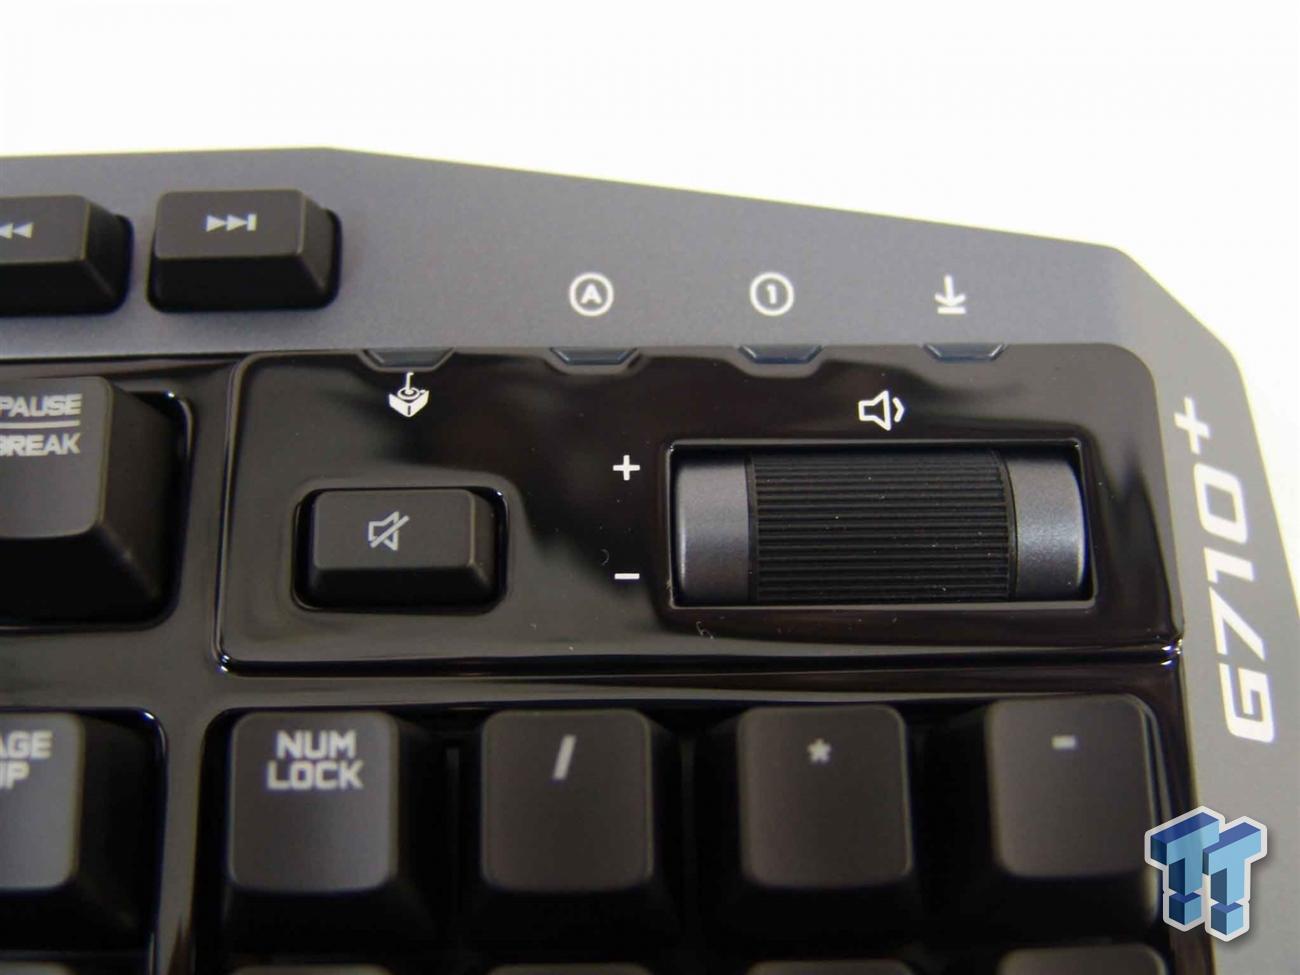 Logitech QA Testing on a G710 Keyboard 